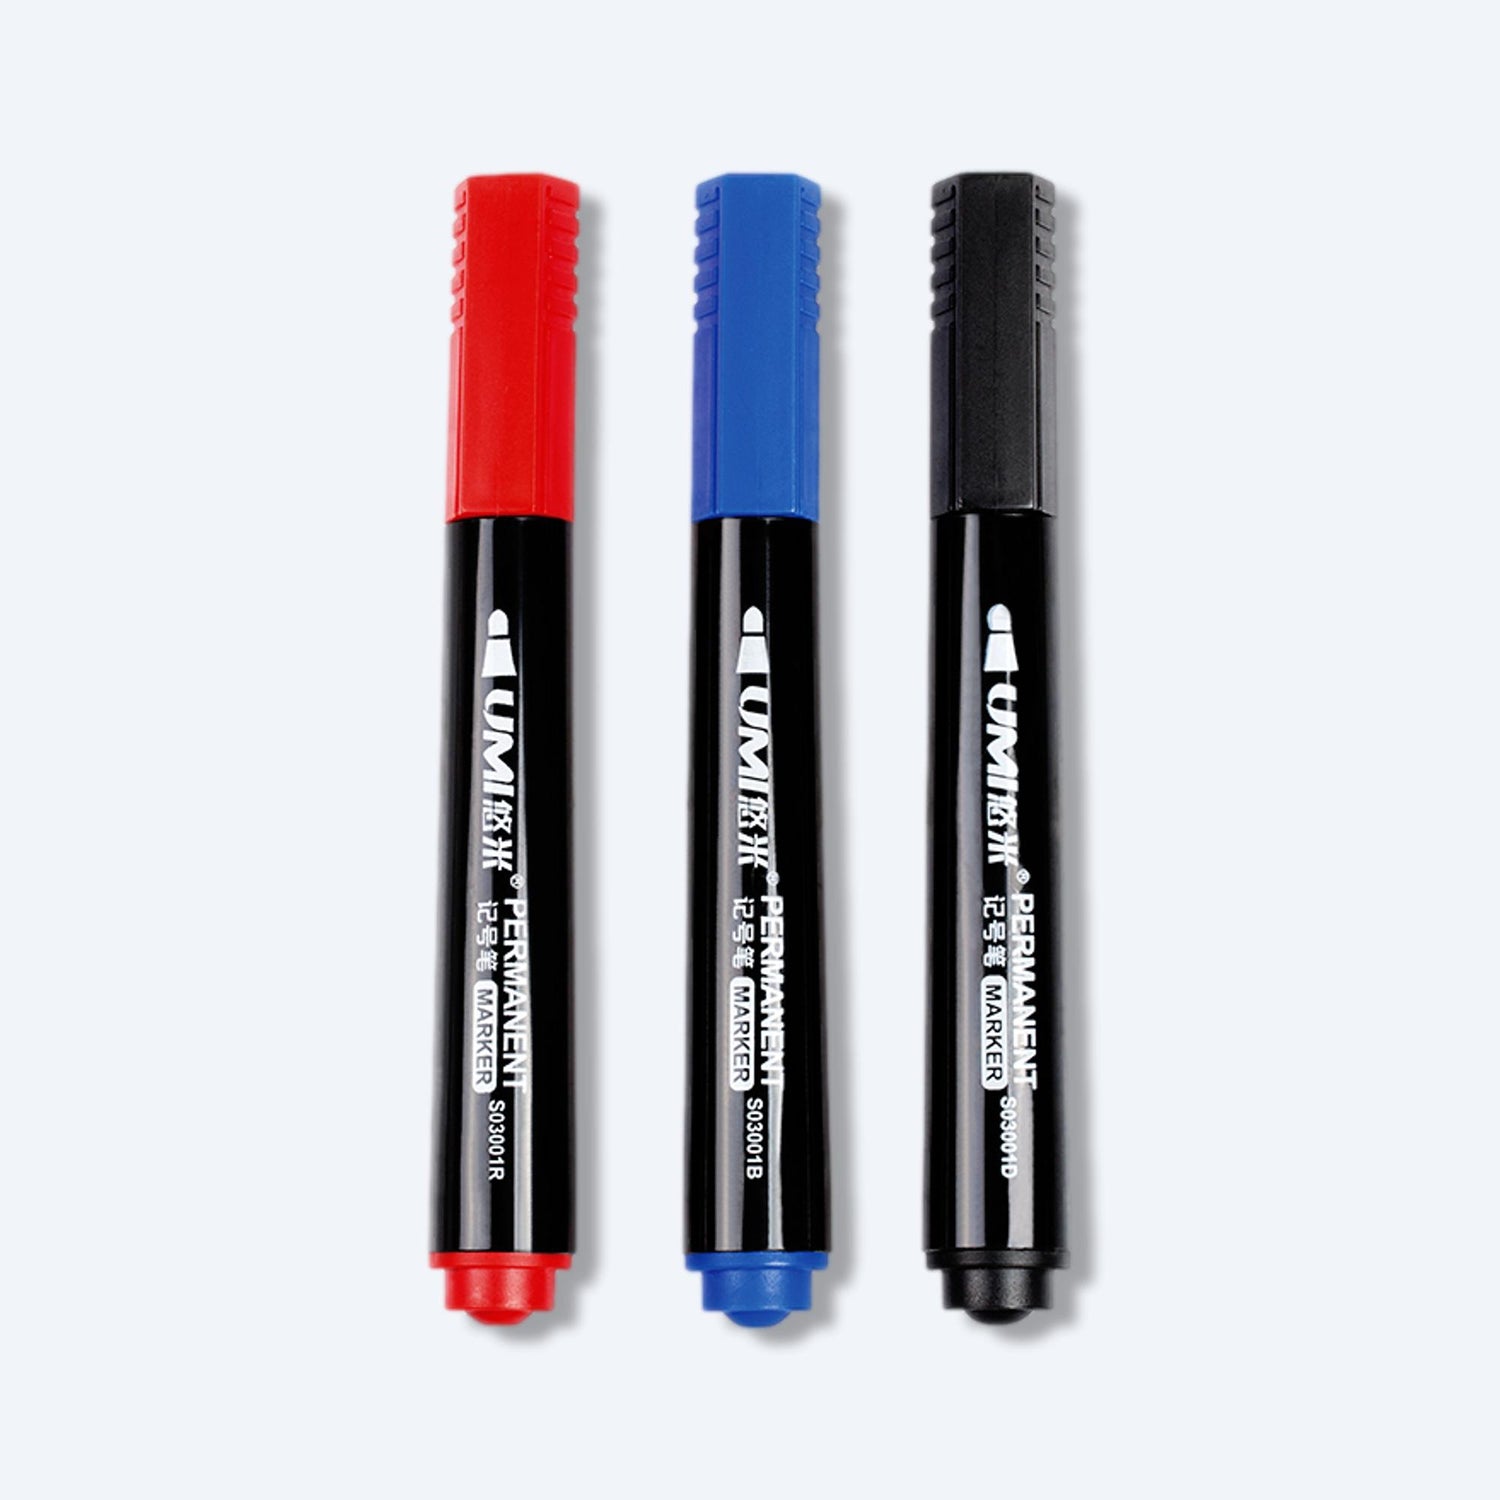 一組三支不同顏色的標記筆，代表順豐快遞寄件包裝用的標記工具。從左至右，有紅色、藍色和黑色筆帽，強調這些筆適合用於標記順豐快遞寄件包裝。黑色的筆身與鮮豔的筆帽對比，使得這些標記筆在順豐快遞寄件包裝準備過程中易於識別。